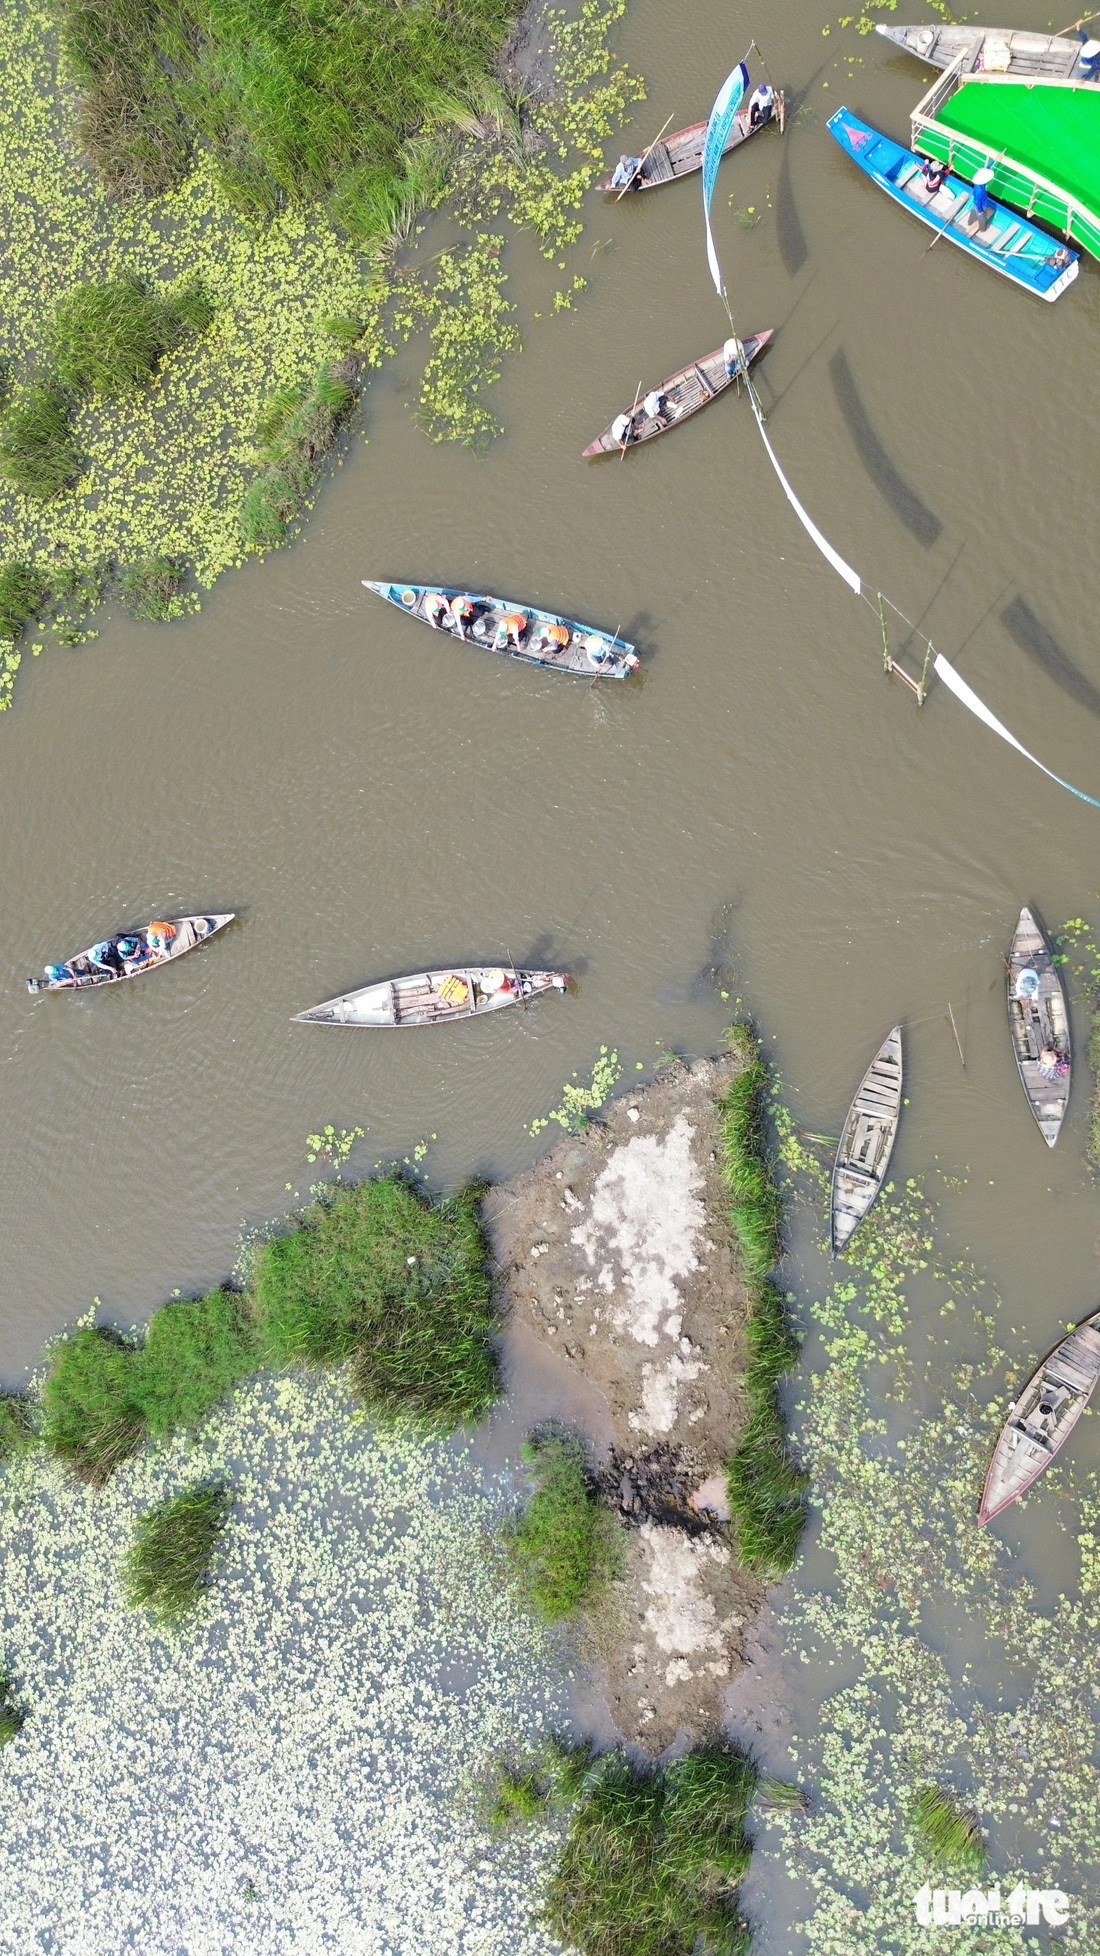 Ghe thuyền của người dân mưu sinh trên sông Đầm - Ảnh: LÊ TRUNG